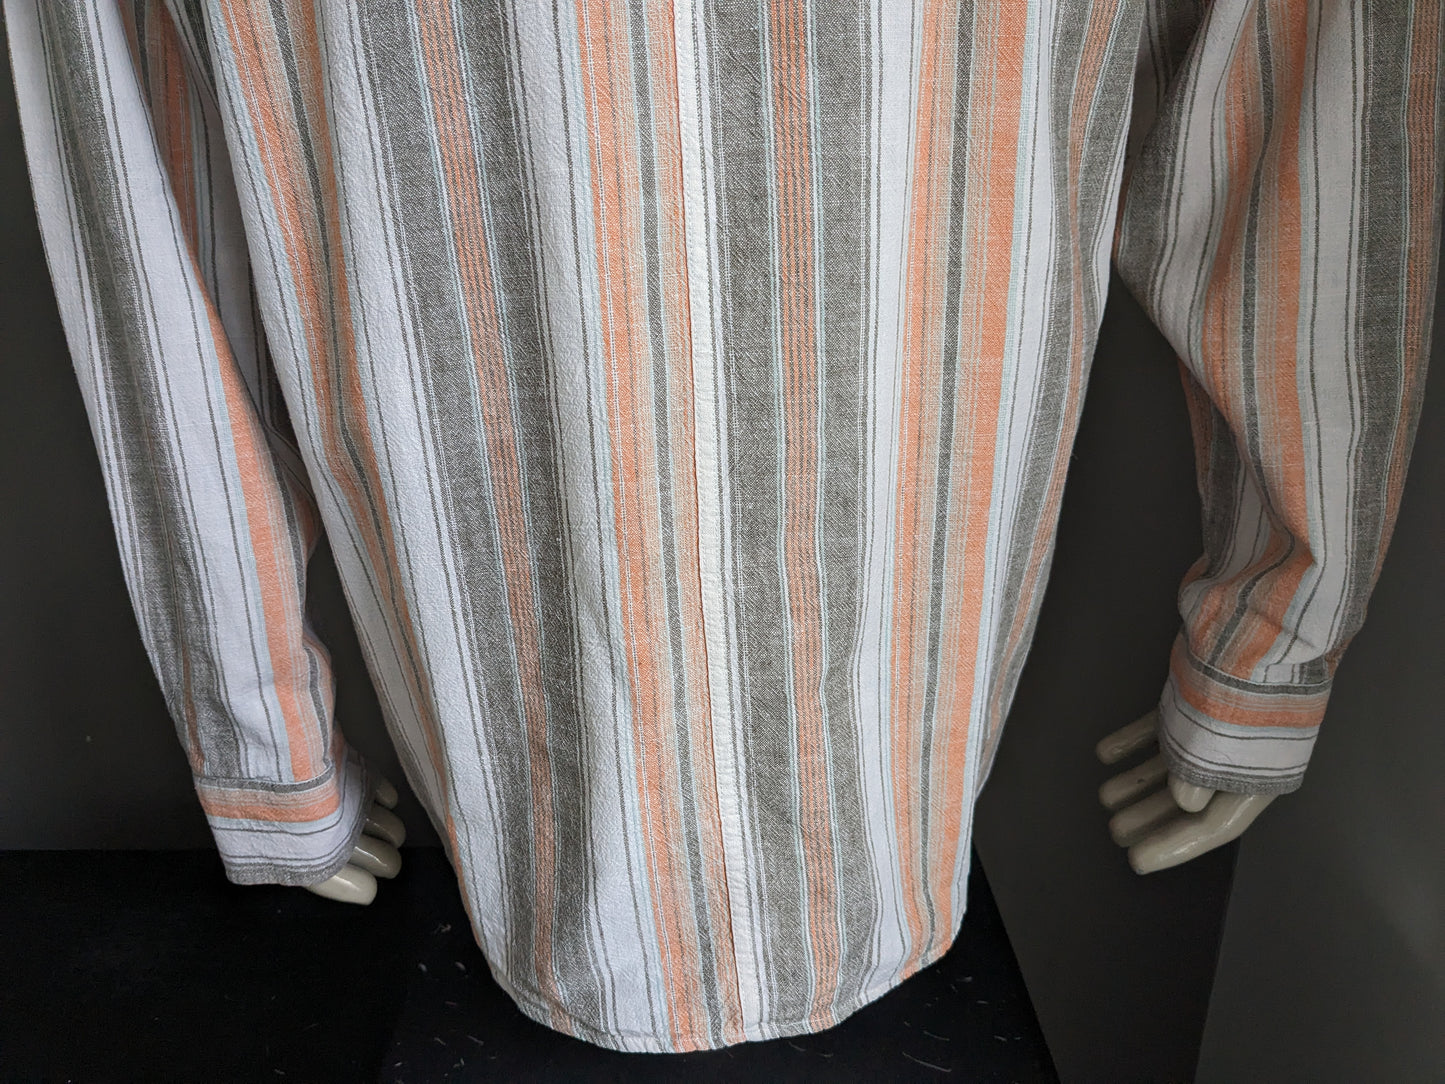 Pull / chemise Vintage GW Polo avec collier surélevé / agriculteurs / mao. Gris orange rayé. 55% de lin. Taille xxl.